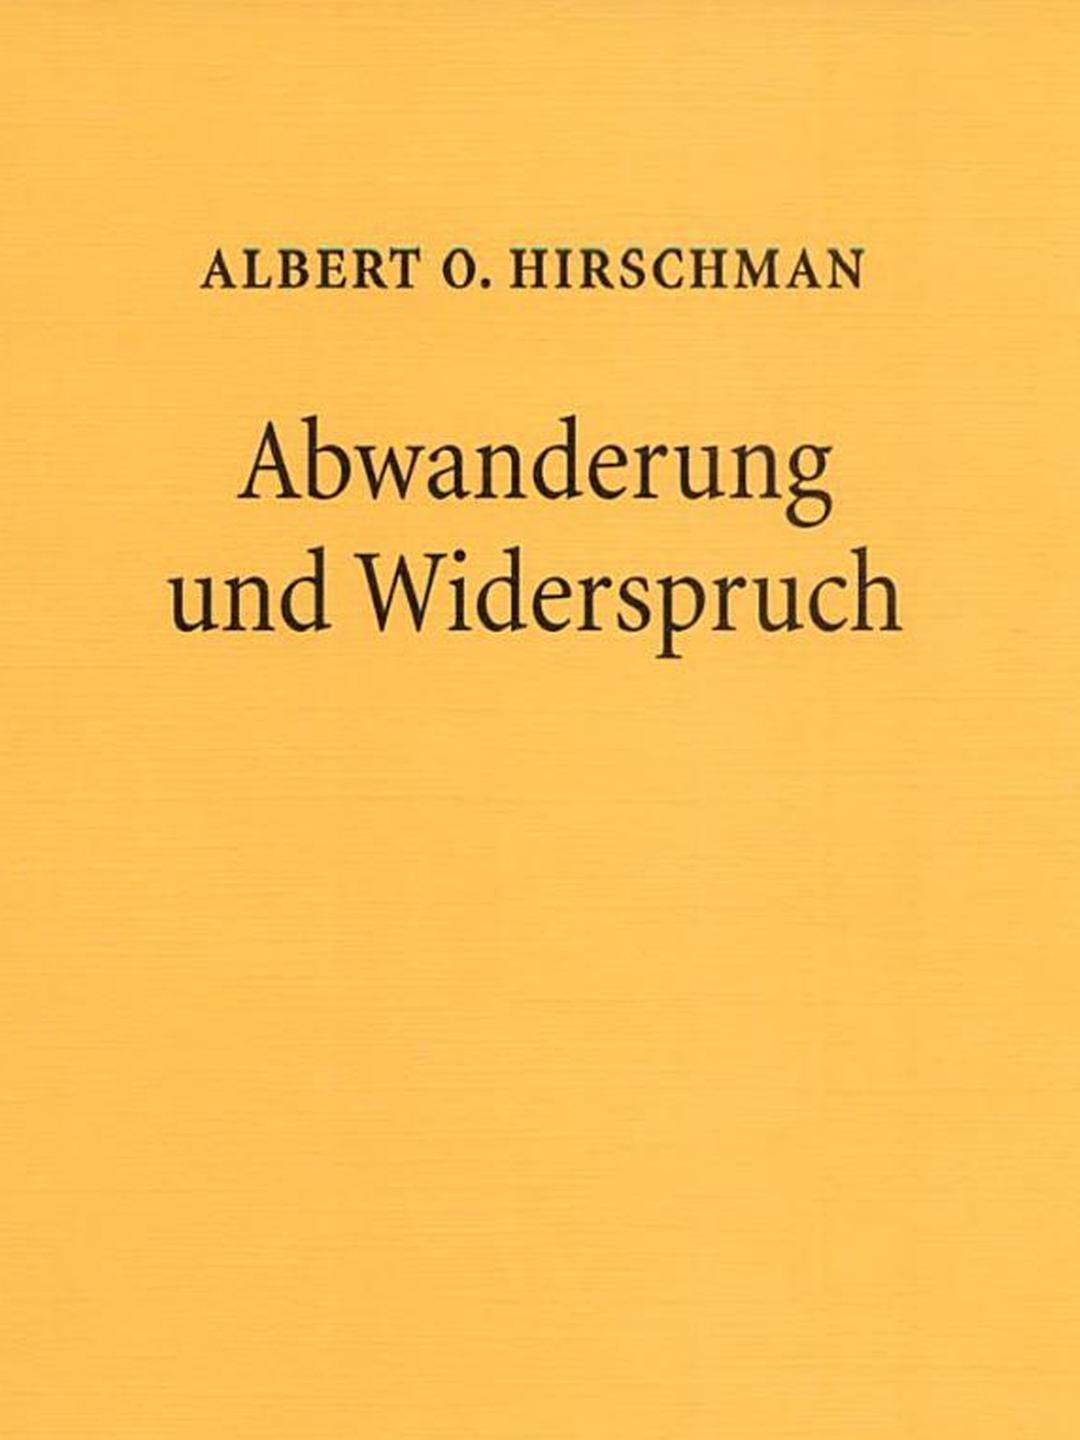 Albert O. Hirschman: "Abwanderung und Widerspruch"